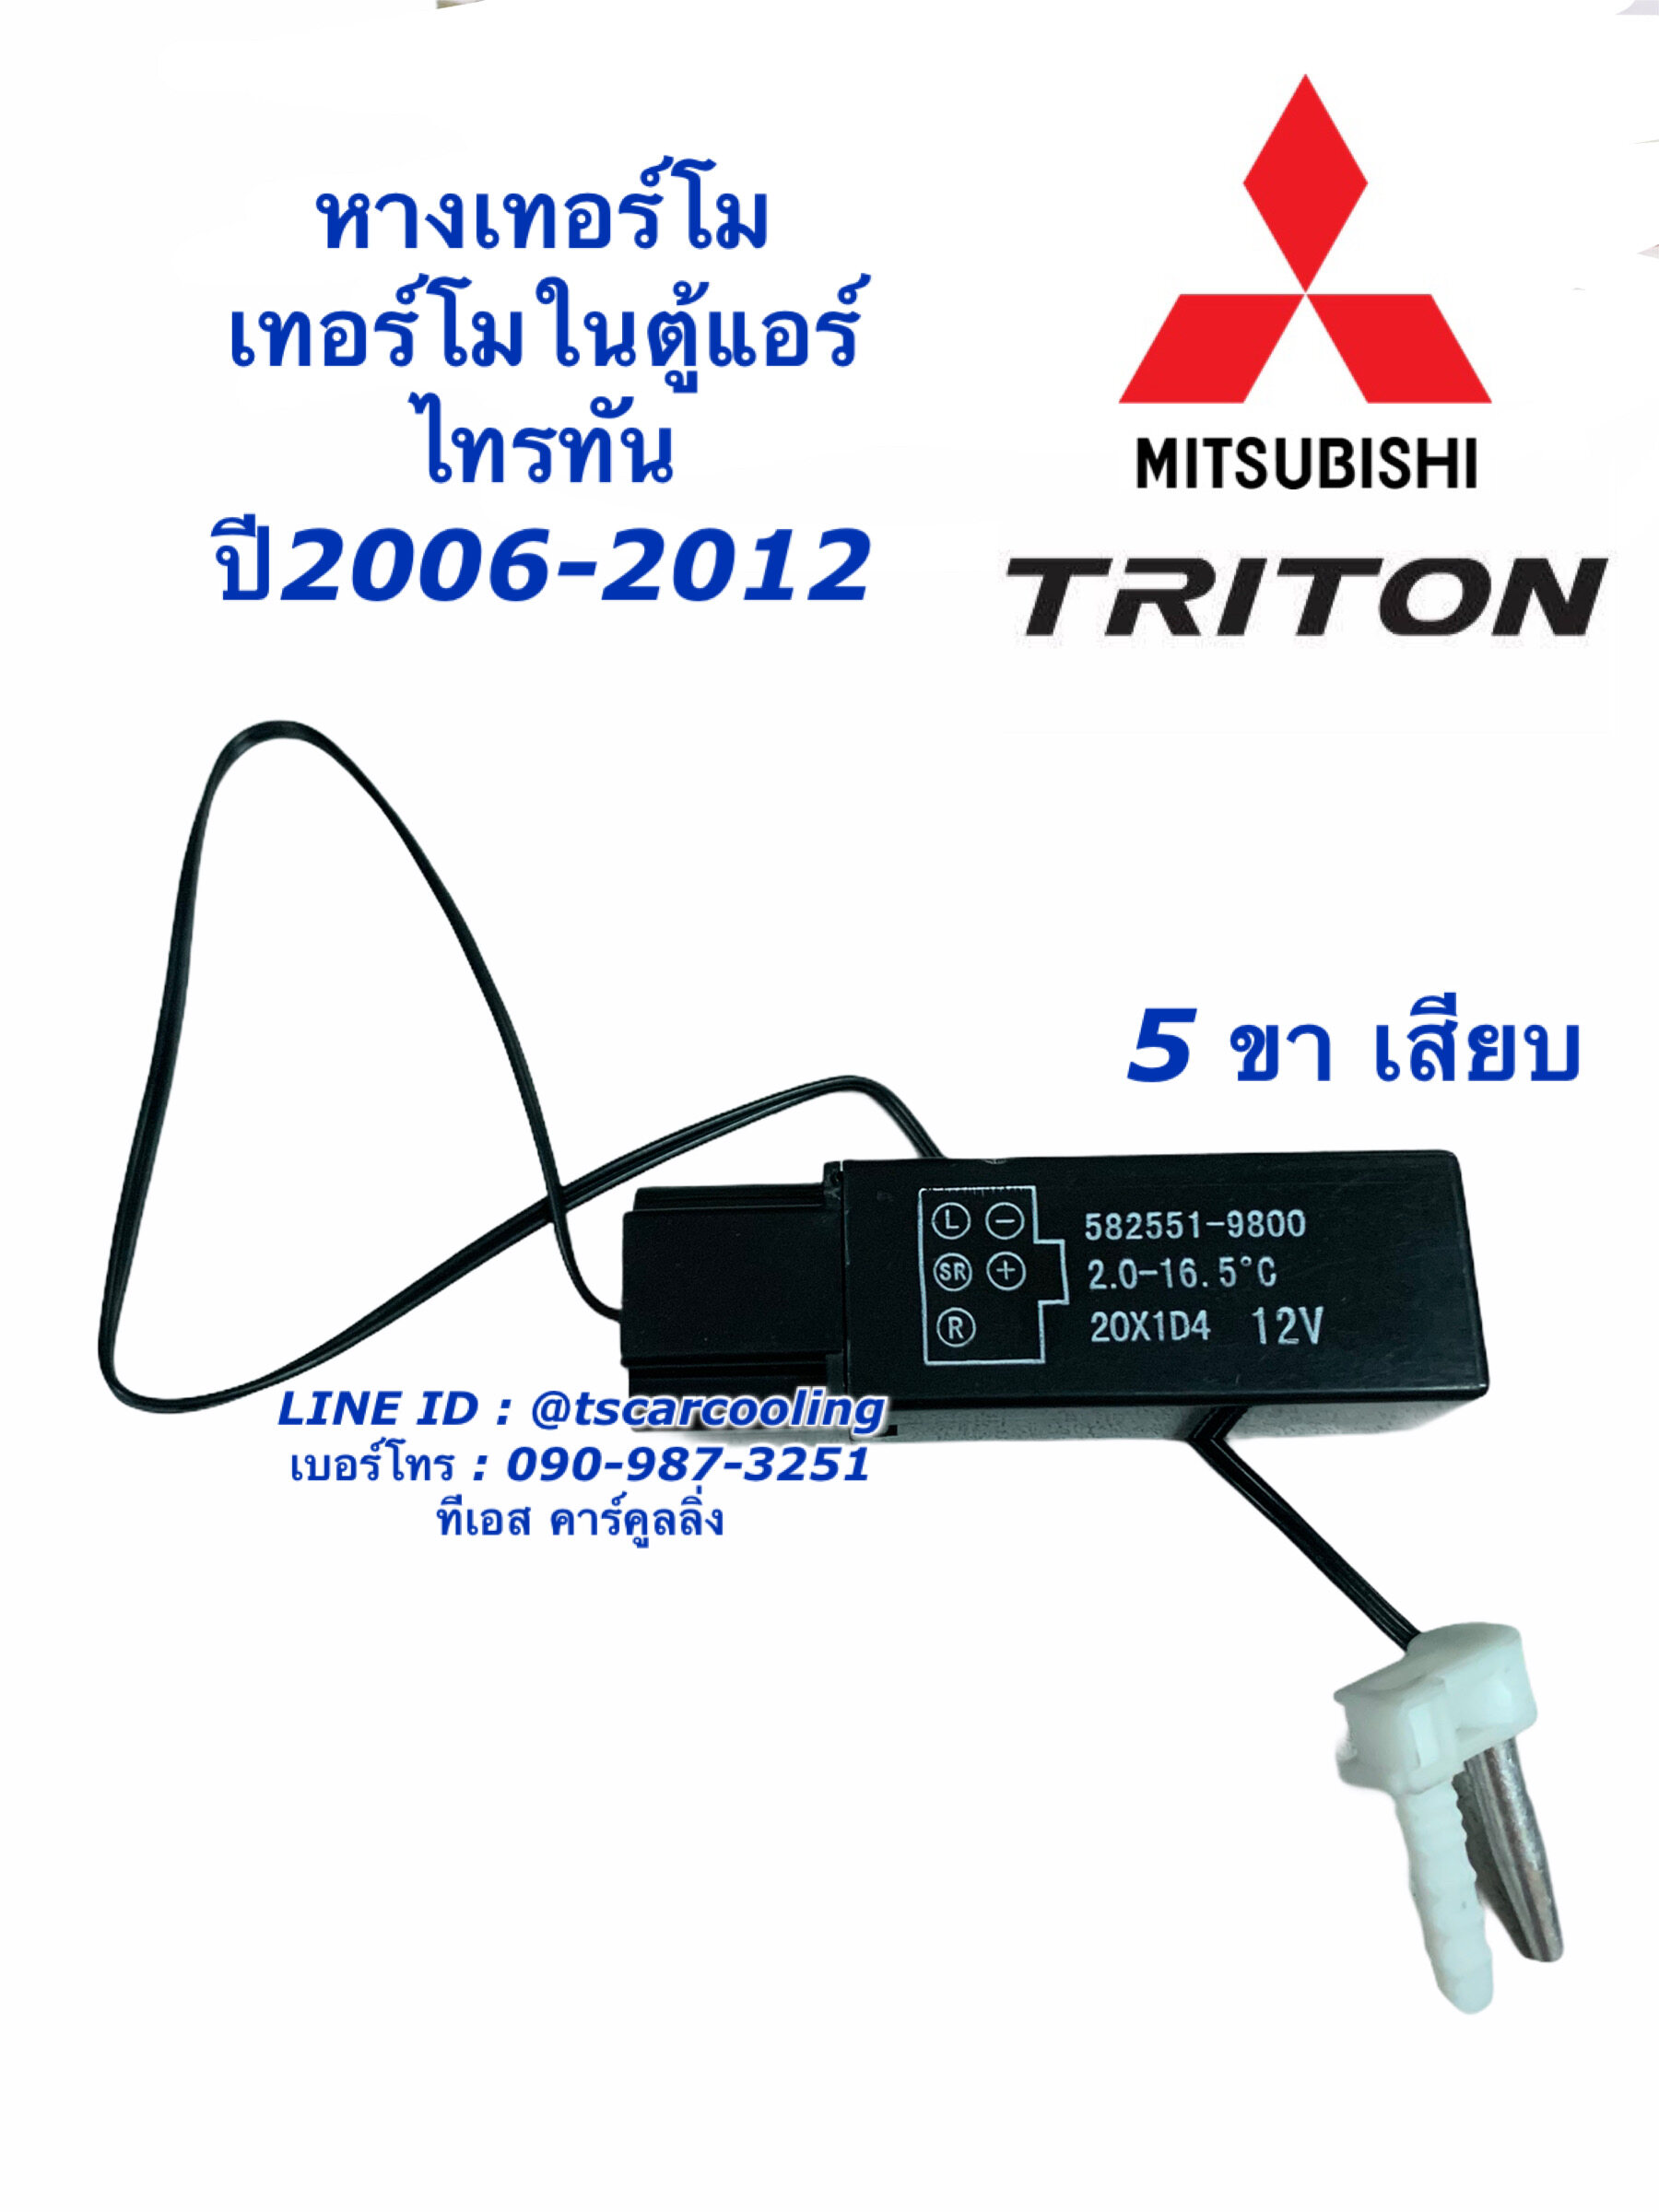 เทอร์โม ตู้แอร์ Triton ไทรทัน ปี2004-2012 เทอร์โมสตัท Thermostat หางเทอร์โม มิตซูบิชิ ไททัน Mitsubishi หางเทอโม เทอโม